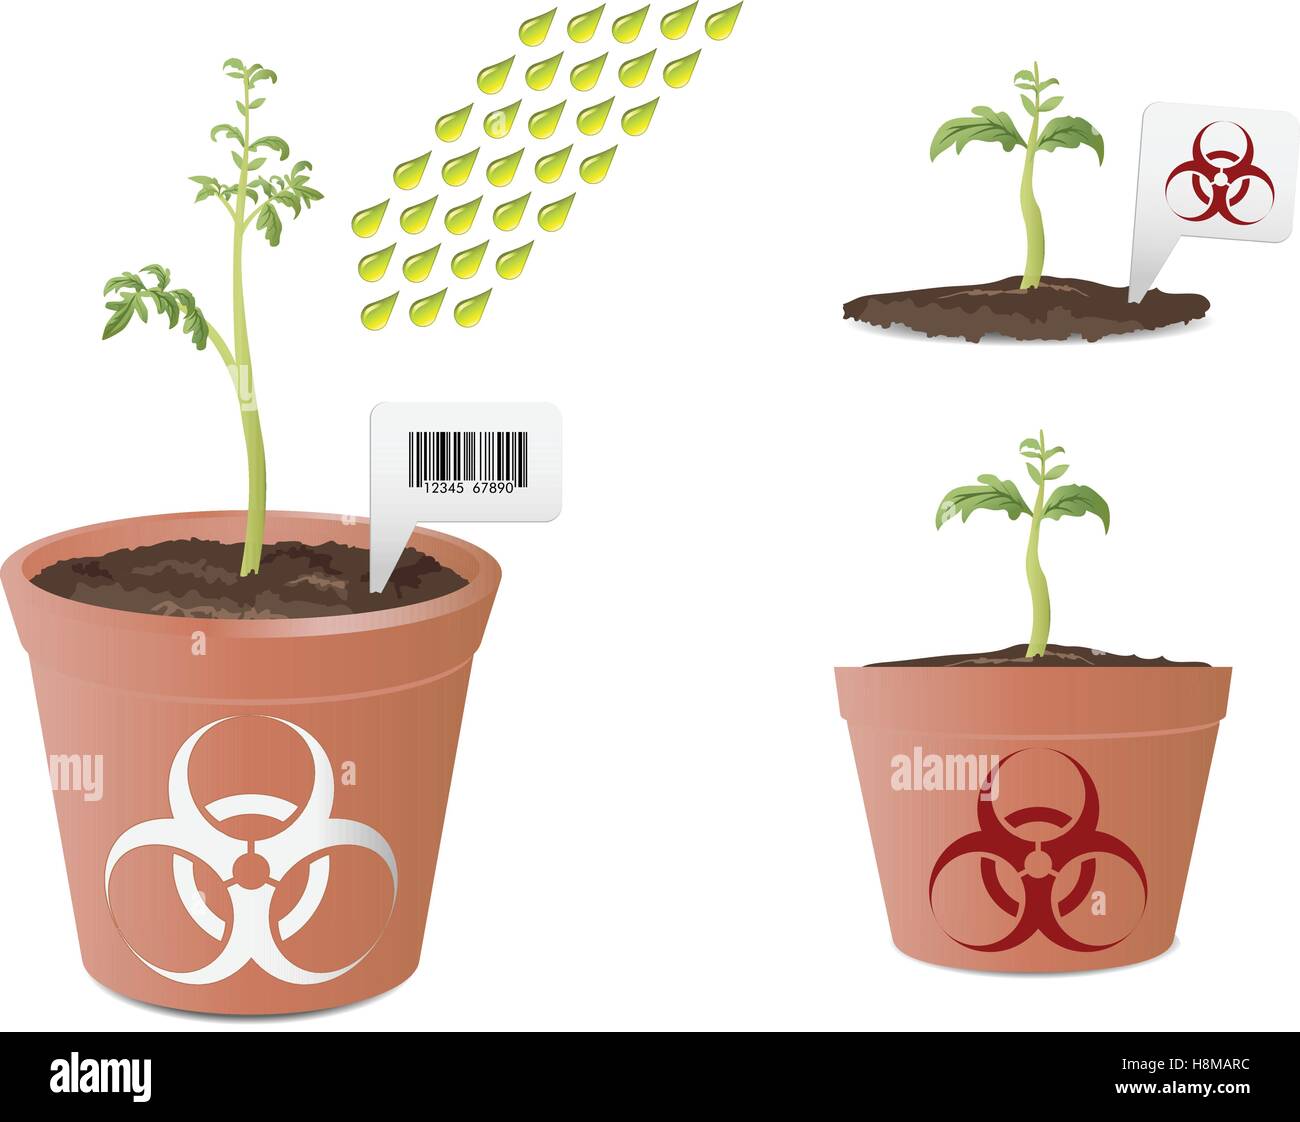 Organisme génétiquement modifié ; plante de tomate bio avec l'icône de danger dans des pots Illustration de Vecteur